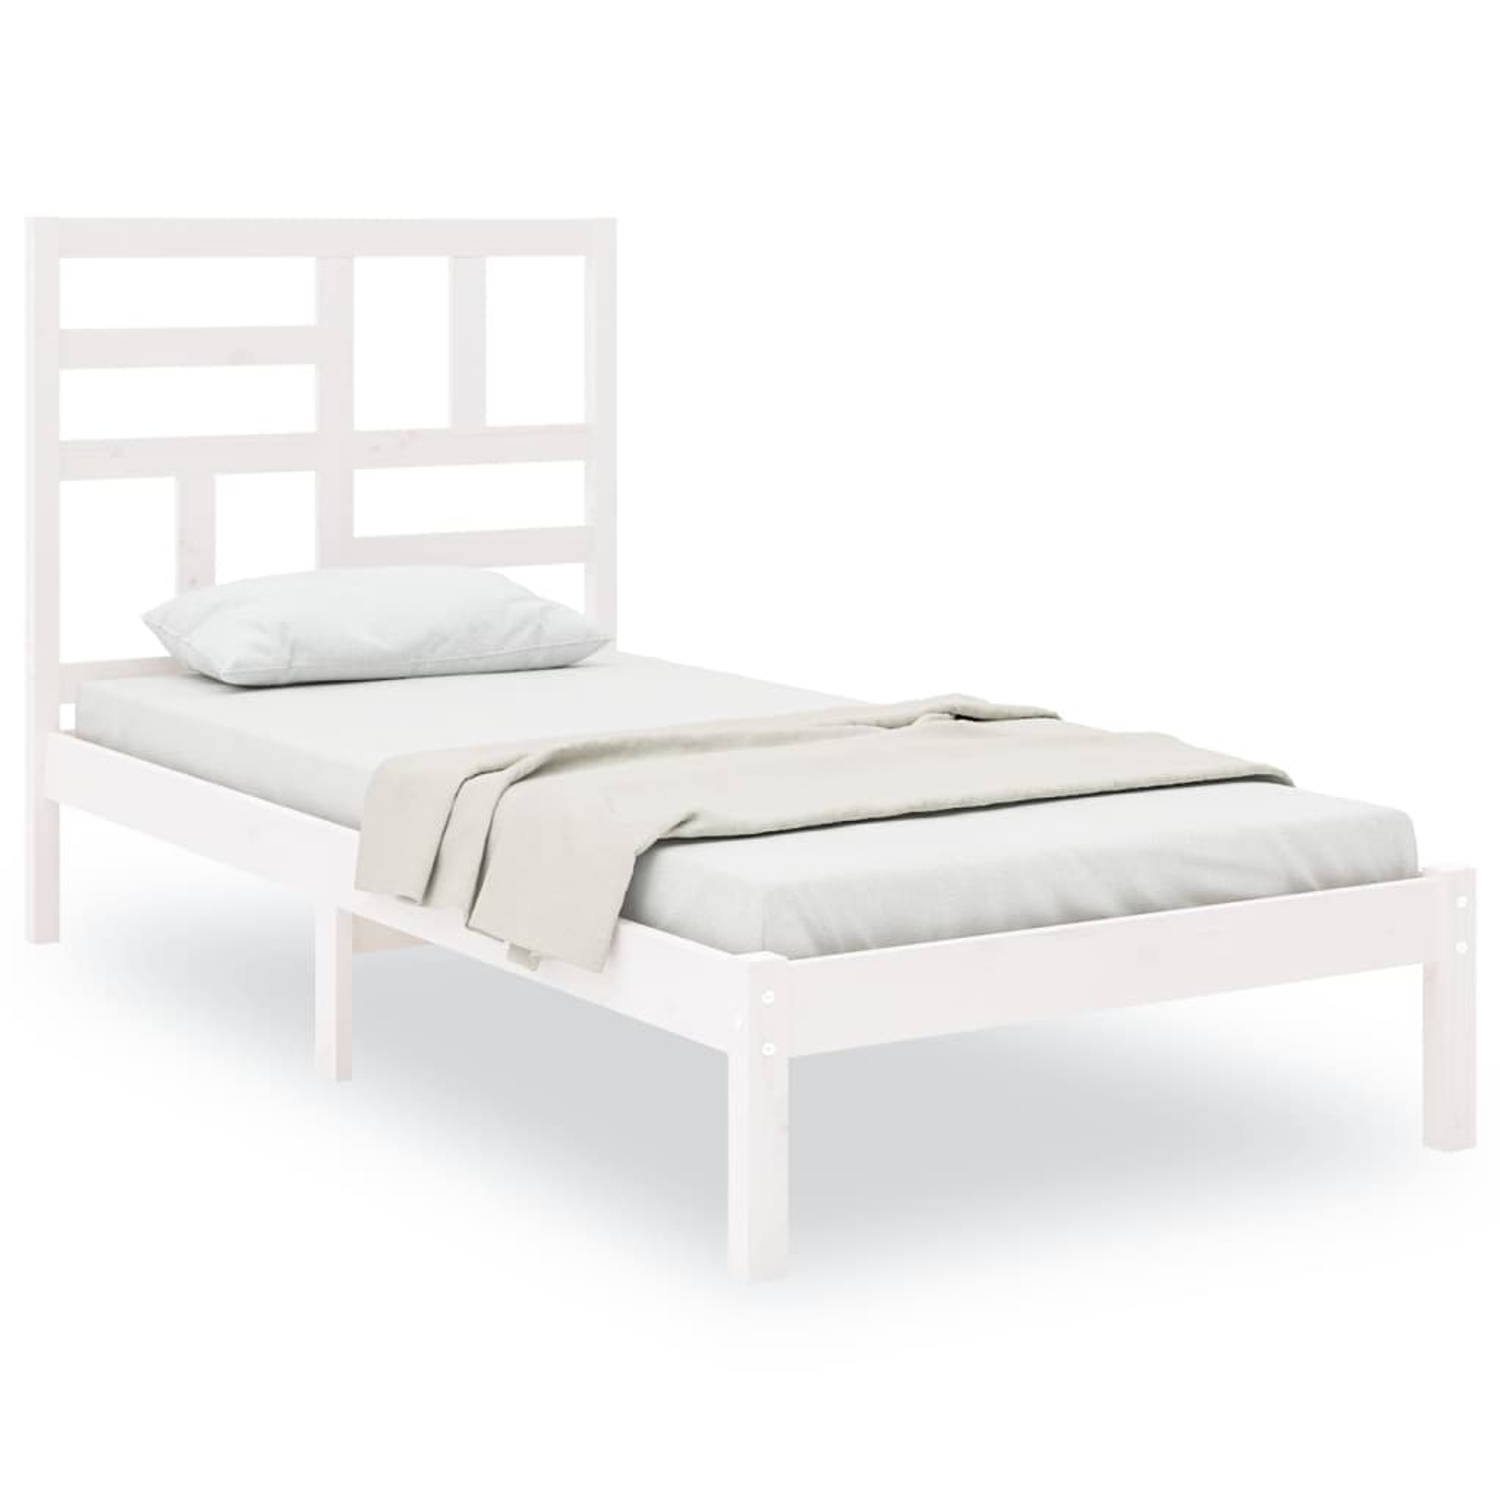 The Living Store Bedframe massief hout wit 100x200 cm - Bedframe - Bedframes - Bed - Bedbodem - Ledikant - Bed Frame - Massief Houten Bedframe - Slaapmeubel - Eenpersoonsbed - Bedd